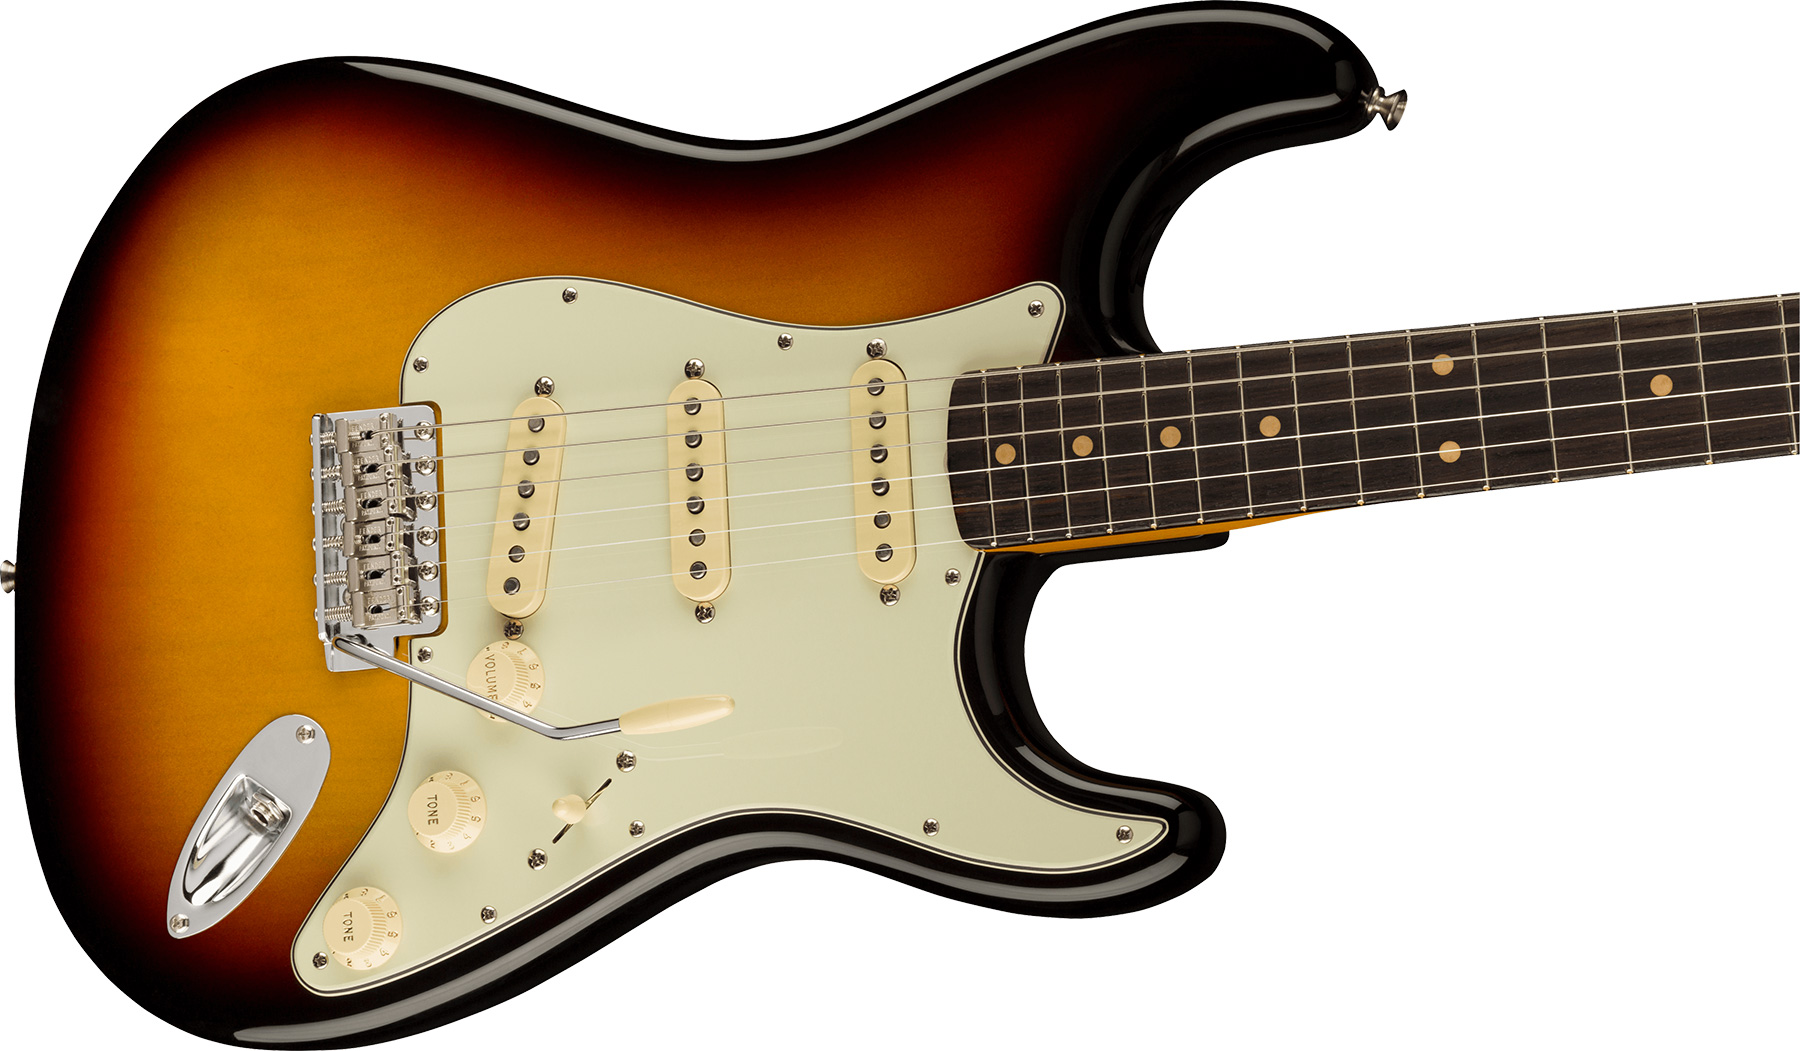 Fender Strat 1961 American Vintage Ii Usa 3s Trem Rw - 3-color Sunburst - Guitare Électrique Forme Str - Variation 2